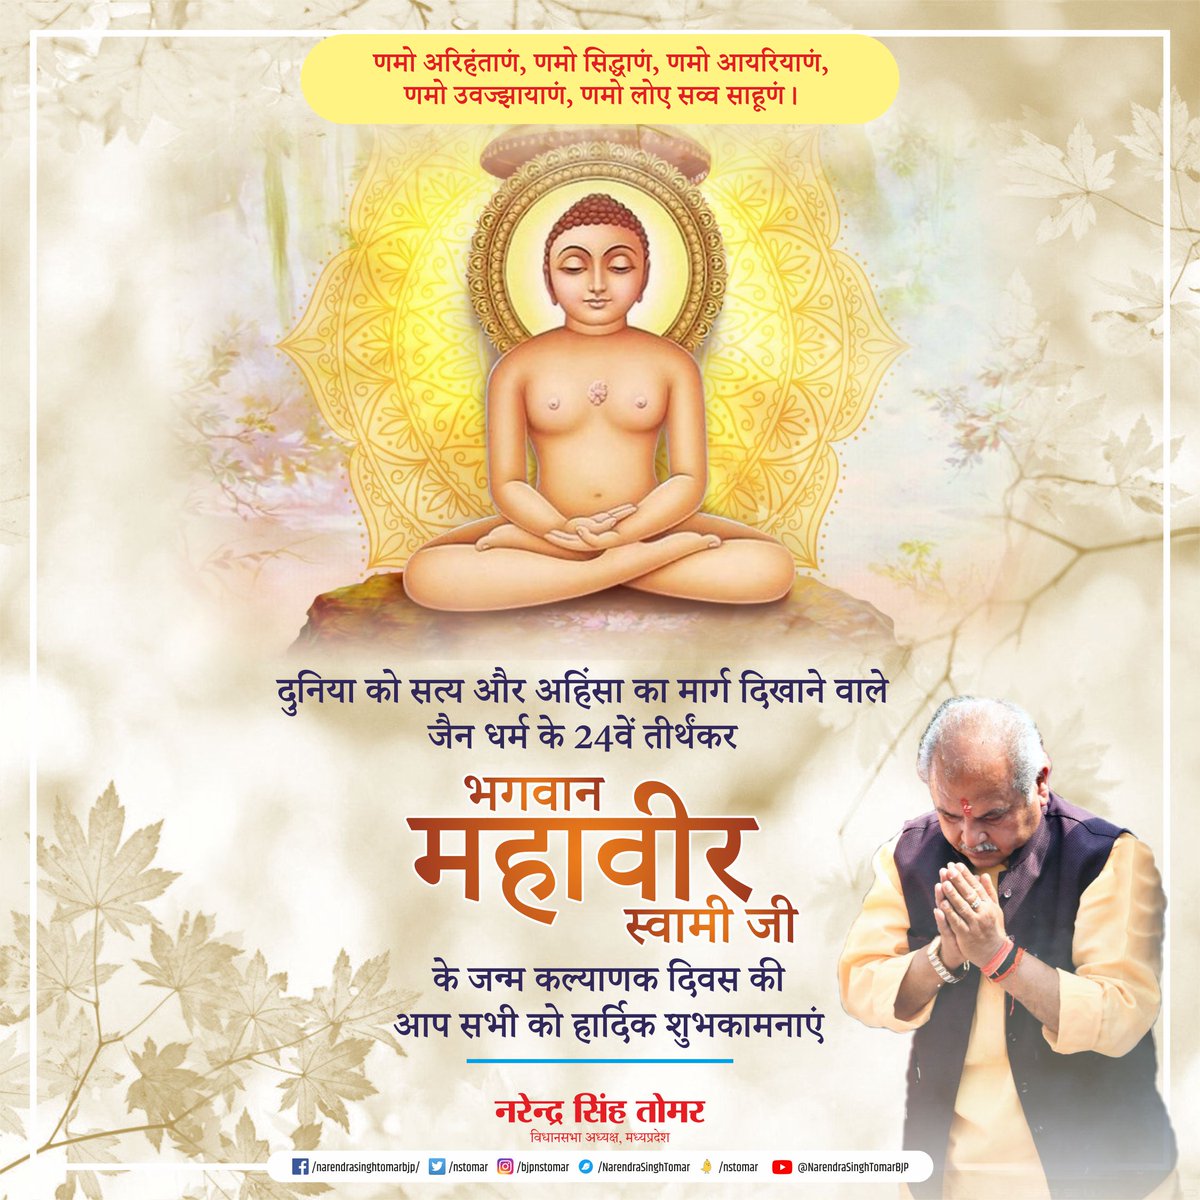 दुनिया को सत्य और अहिंसा का मार्ग दिखाने वाले जैन धर्म के 24वें तीर्थंकर भगवान महावीर स्वामी जी के जन्म कल्याणक दिवस की आप सभी को हार्दिक शुभकामनाएं...